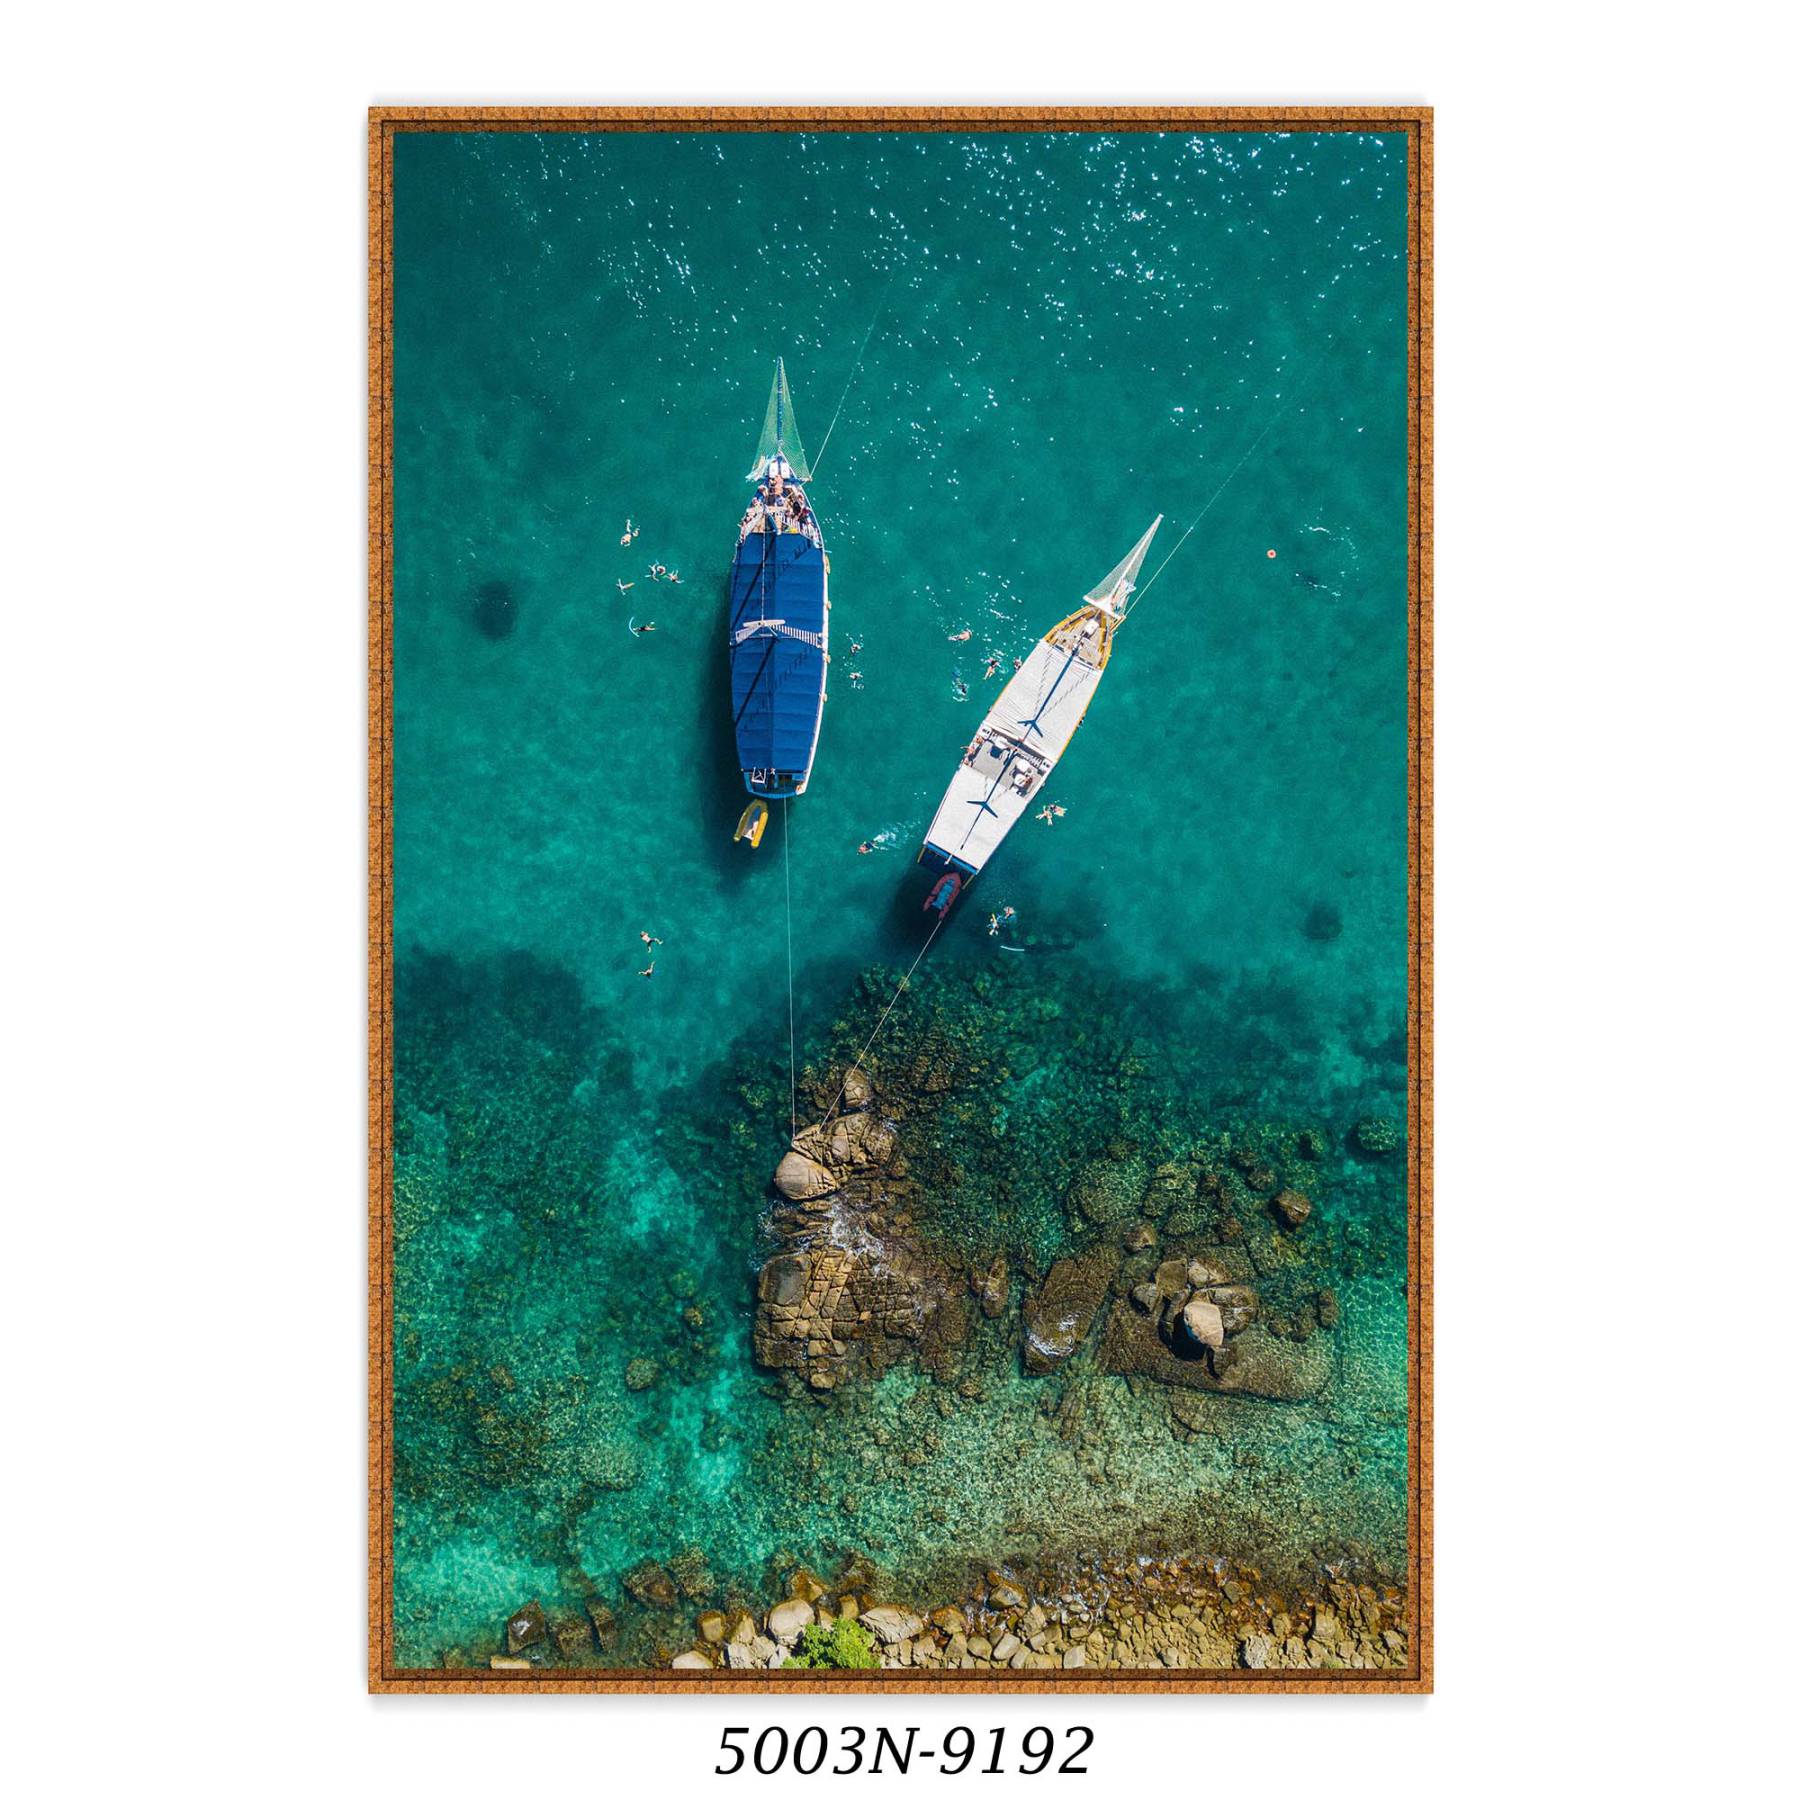 Quadro Decorativo com Fotografia de Barcos no Mar